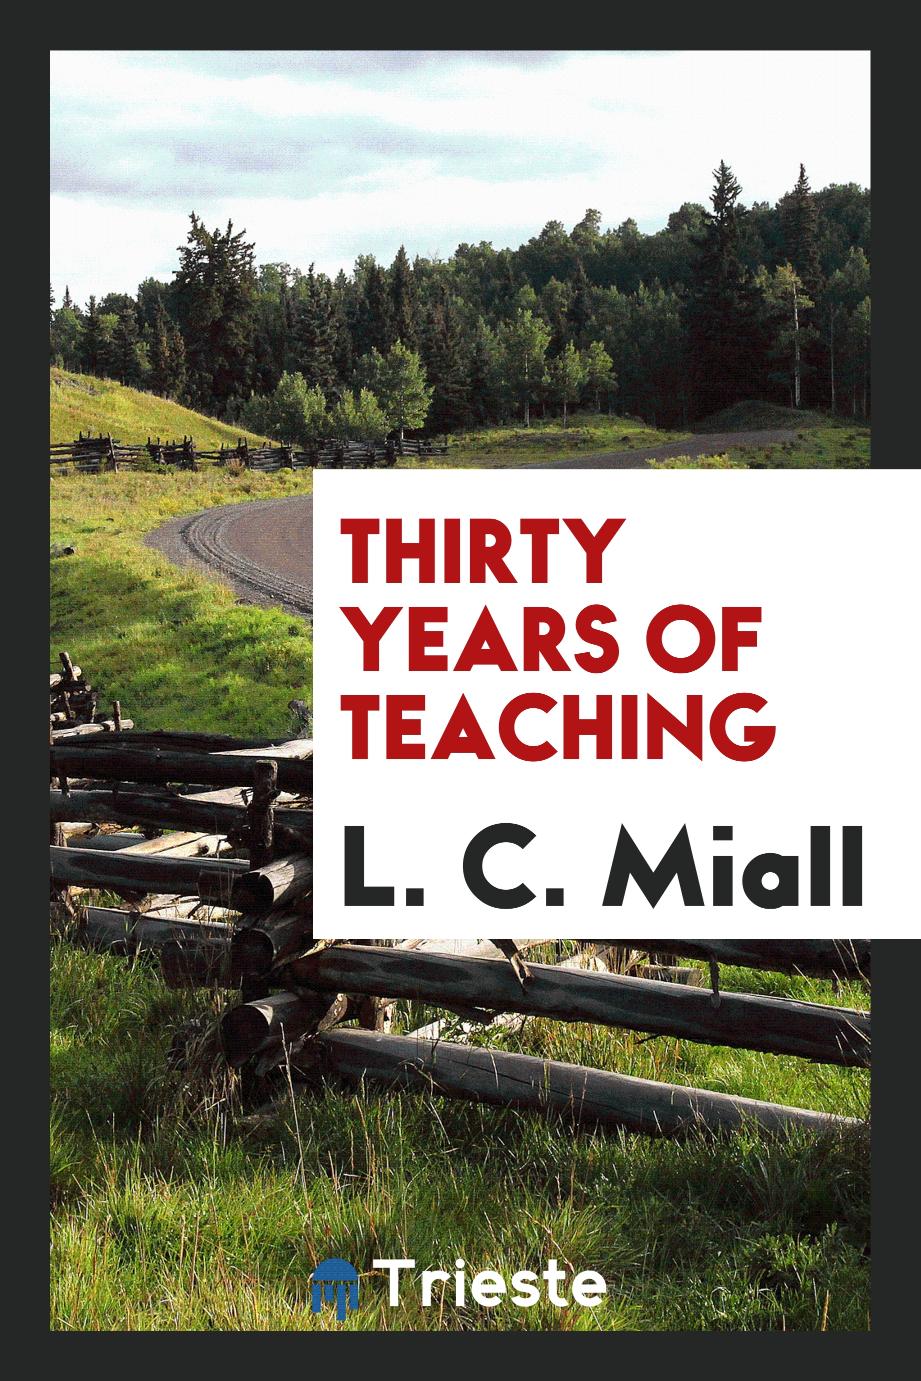 Thirty years of teaching